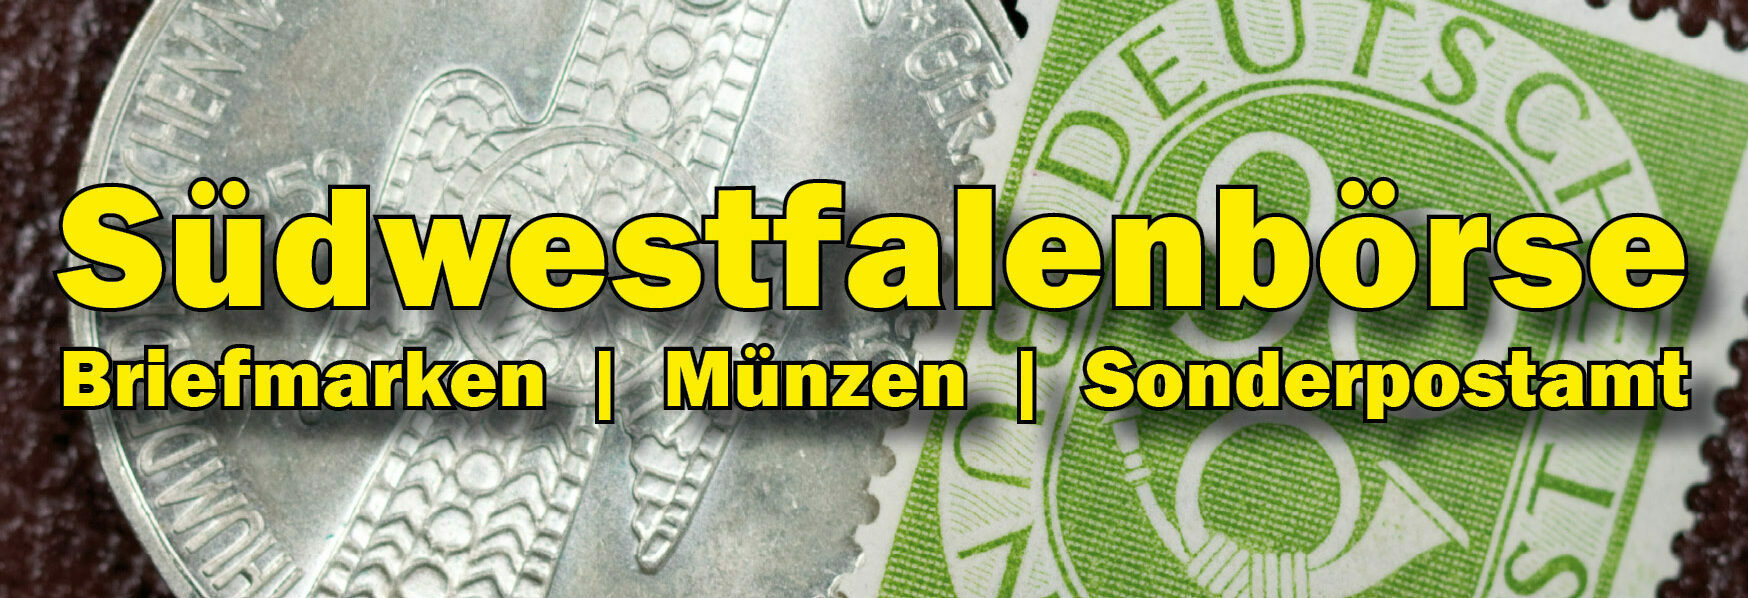 Südwestfalenbörse Siegen | Briefmarken | Münzen | Sonderpostamt